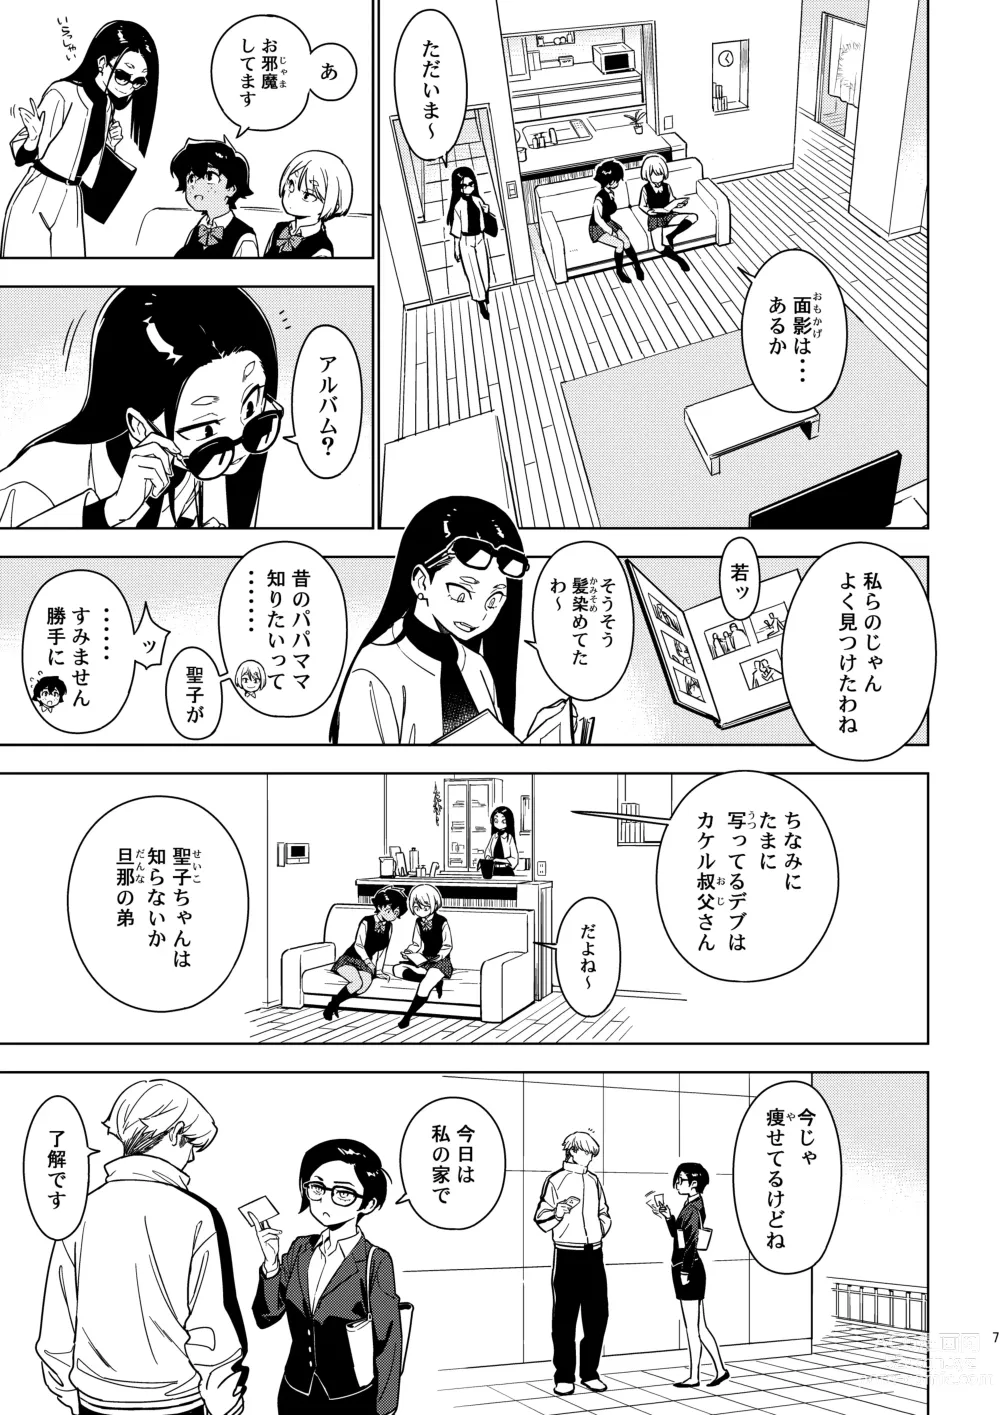 Page 6 of doujinshi Seiko